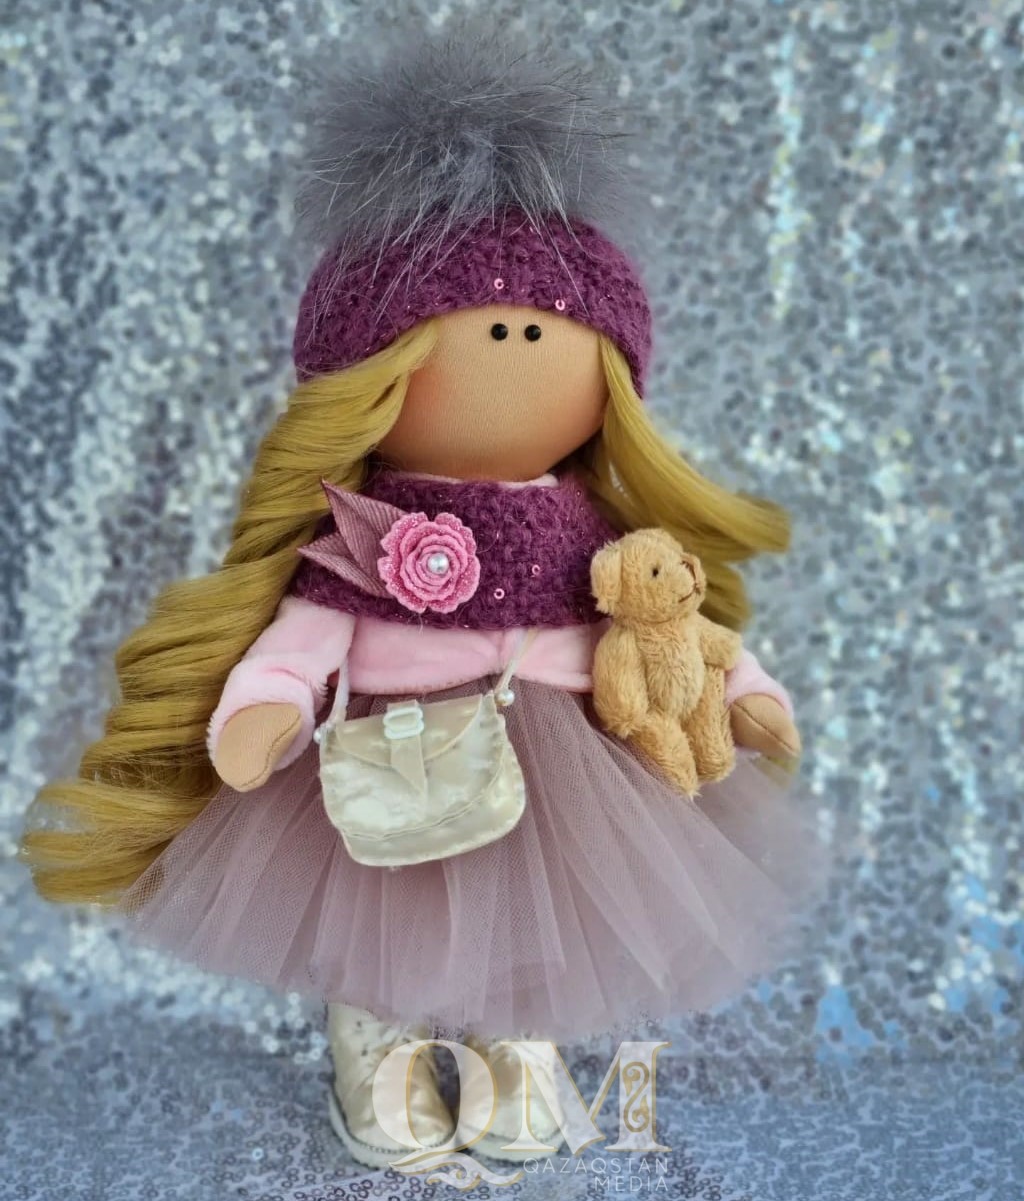 Авторские текстильные куклы создает жительница Петропавловска